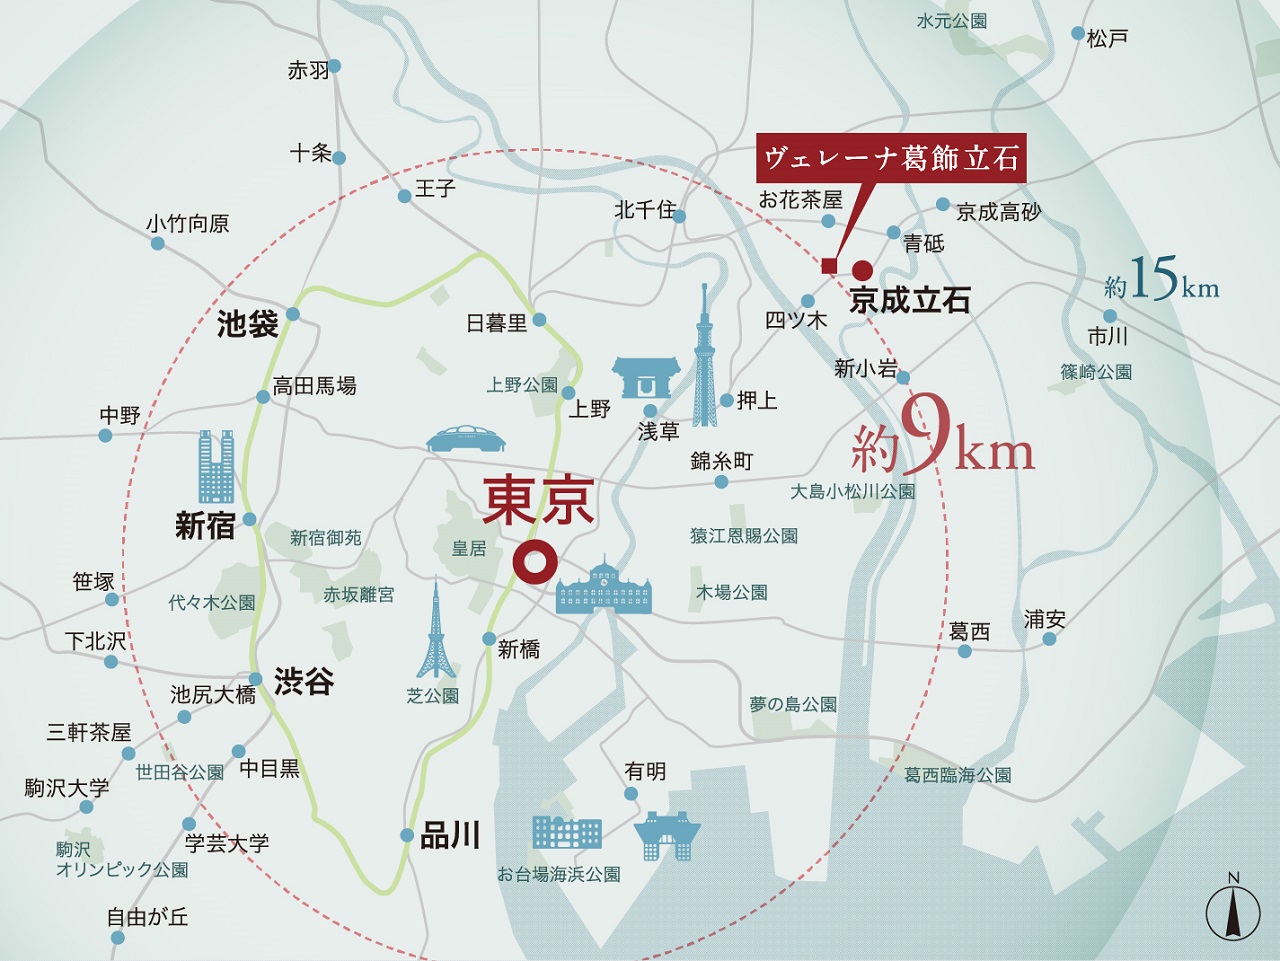 東京駅から約9km圏、都心主要エリアを身近に抱く暮らし。